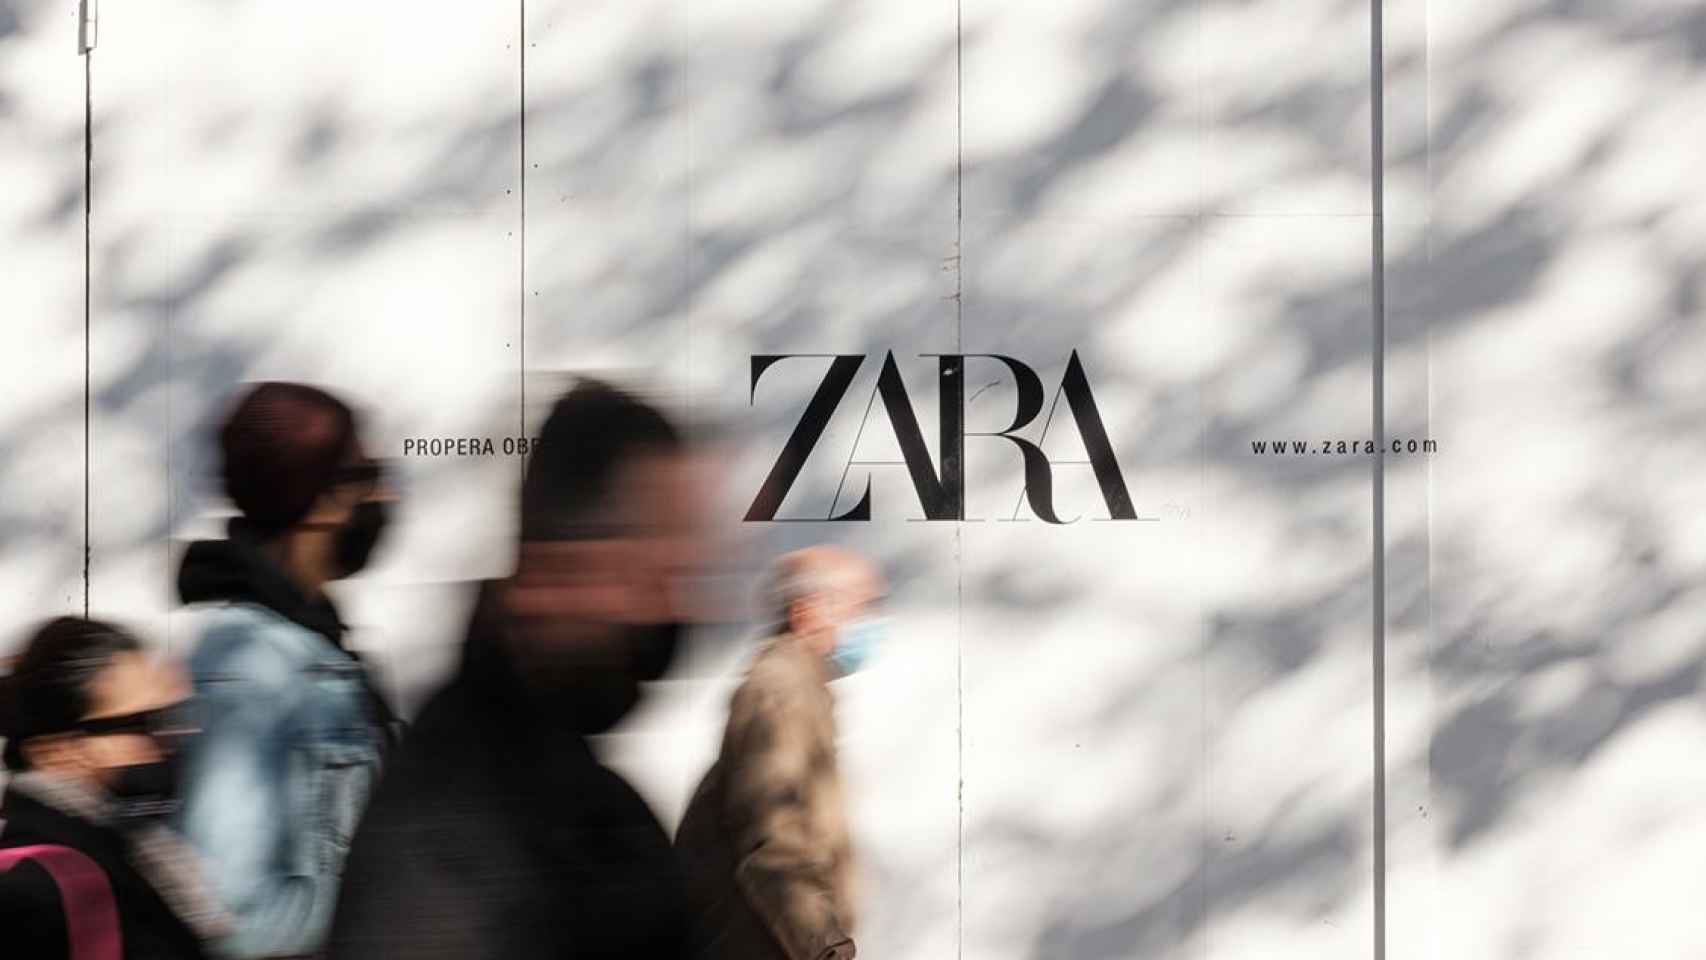 Personas caminan delante de una tienda de Zara del Grupo Inditex en Barcelona / PABLO MIRANZO (CG)